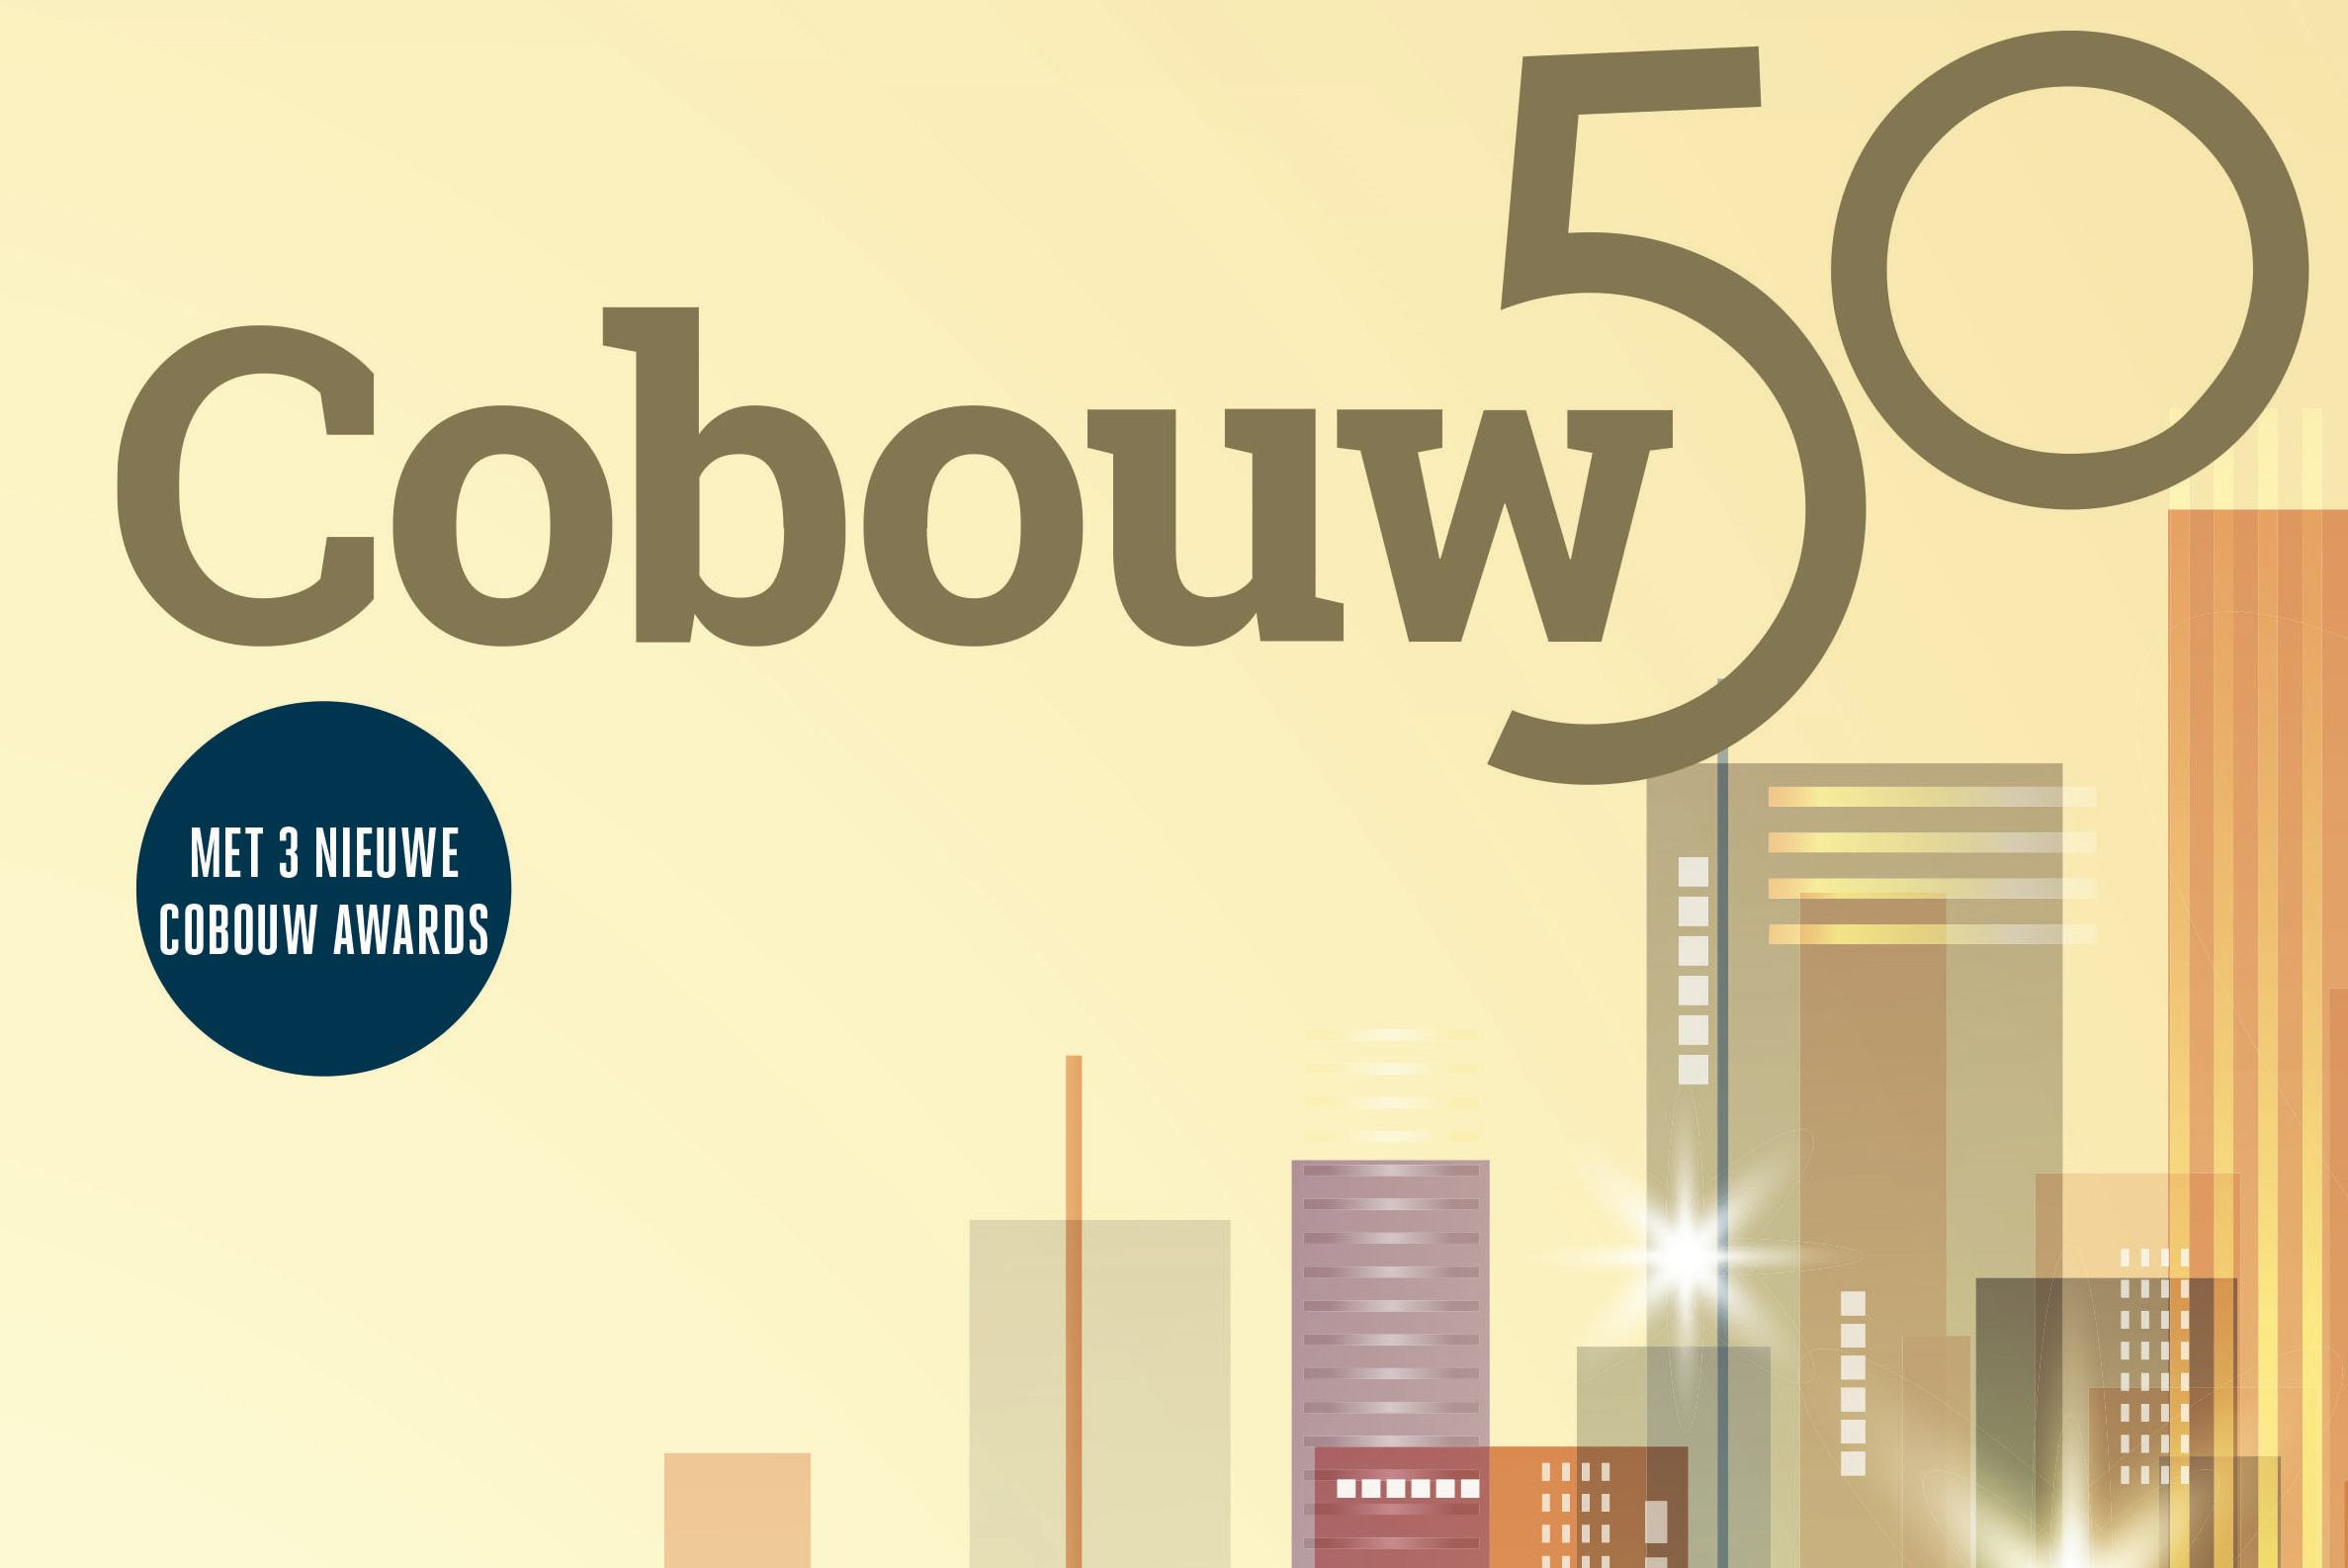 In beeld: de 50 grootste bouwbedrijven van Nederland